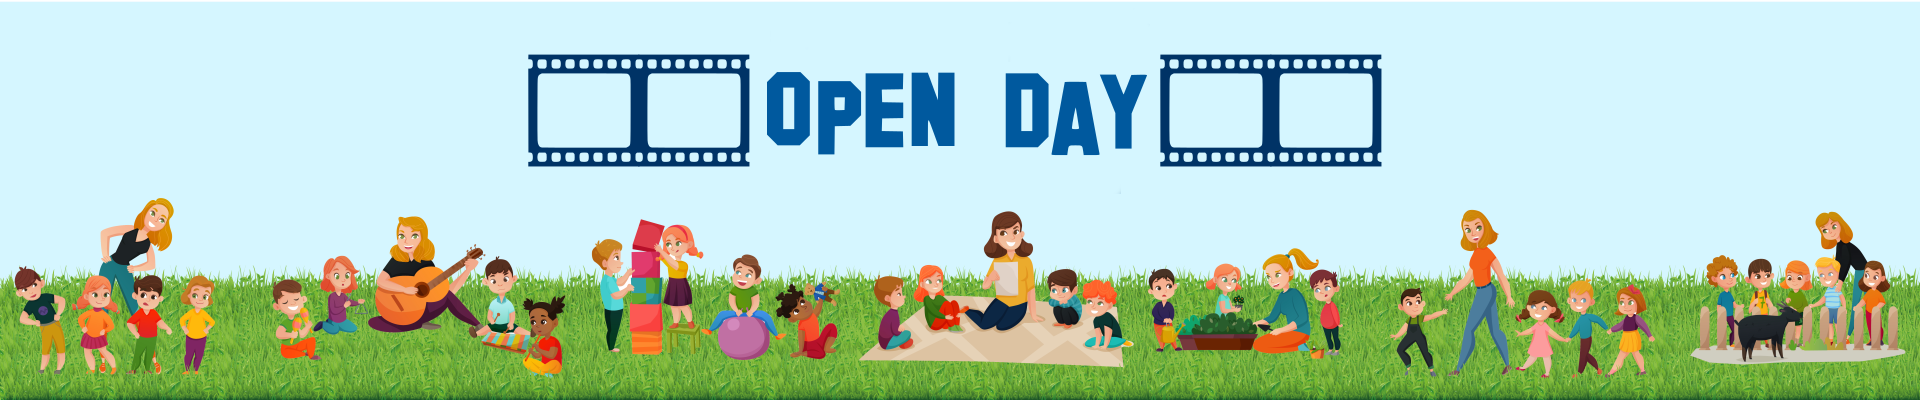 Vai alla sezione dedicata agli Open Day - prenotazioni via email